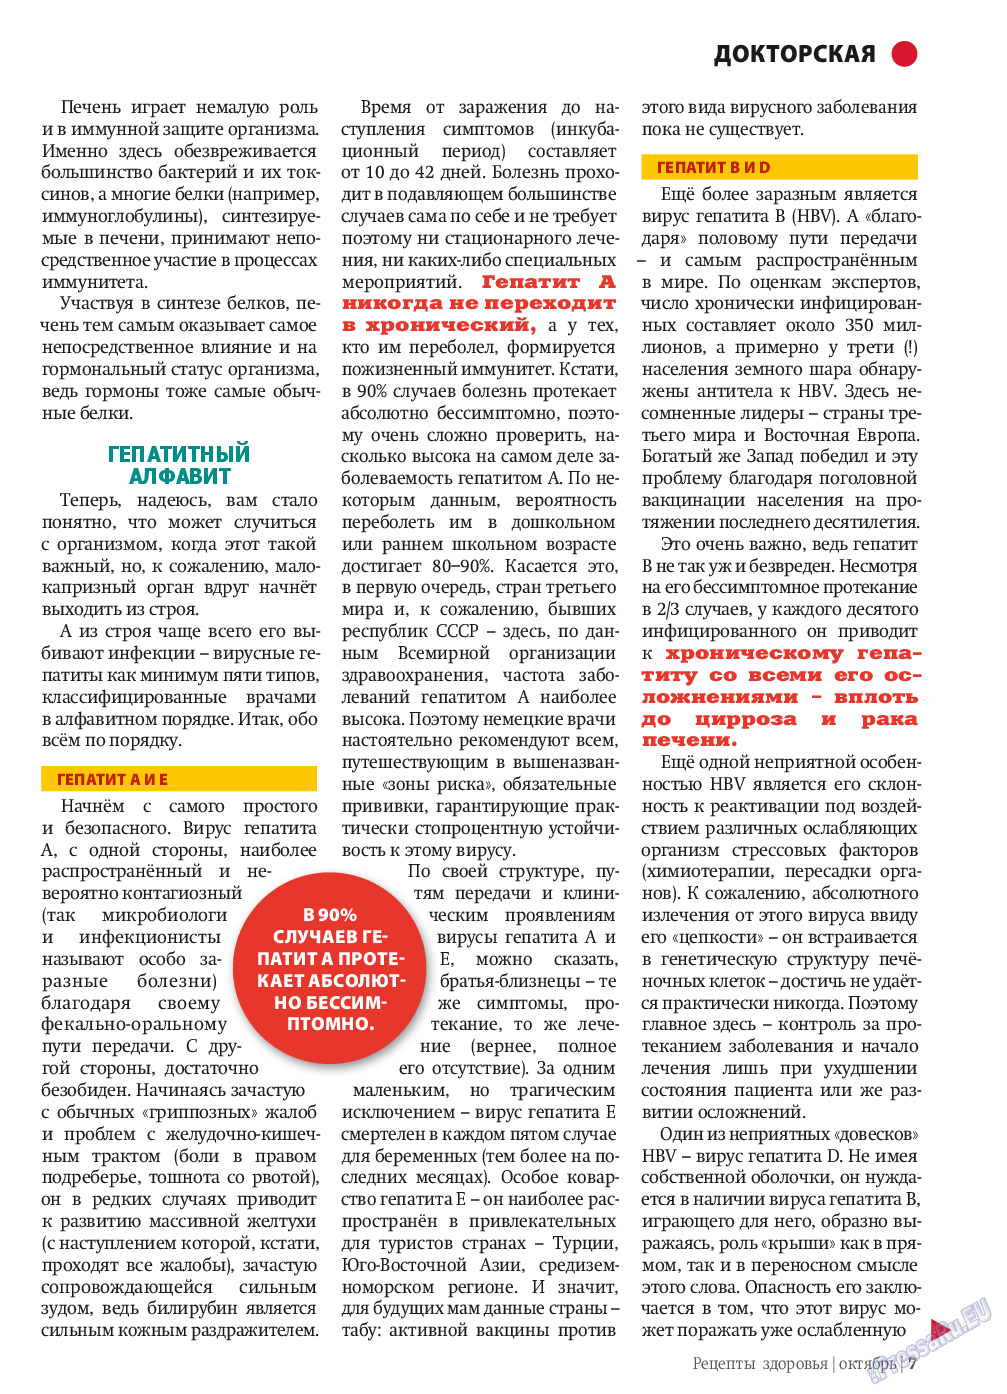 Рецепты здоровья, журнал. 2013 №10 стр.7